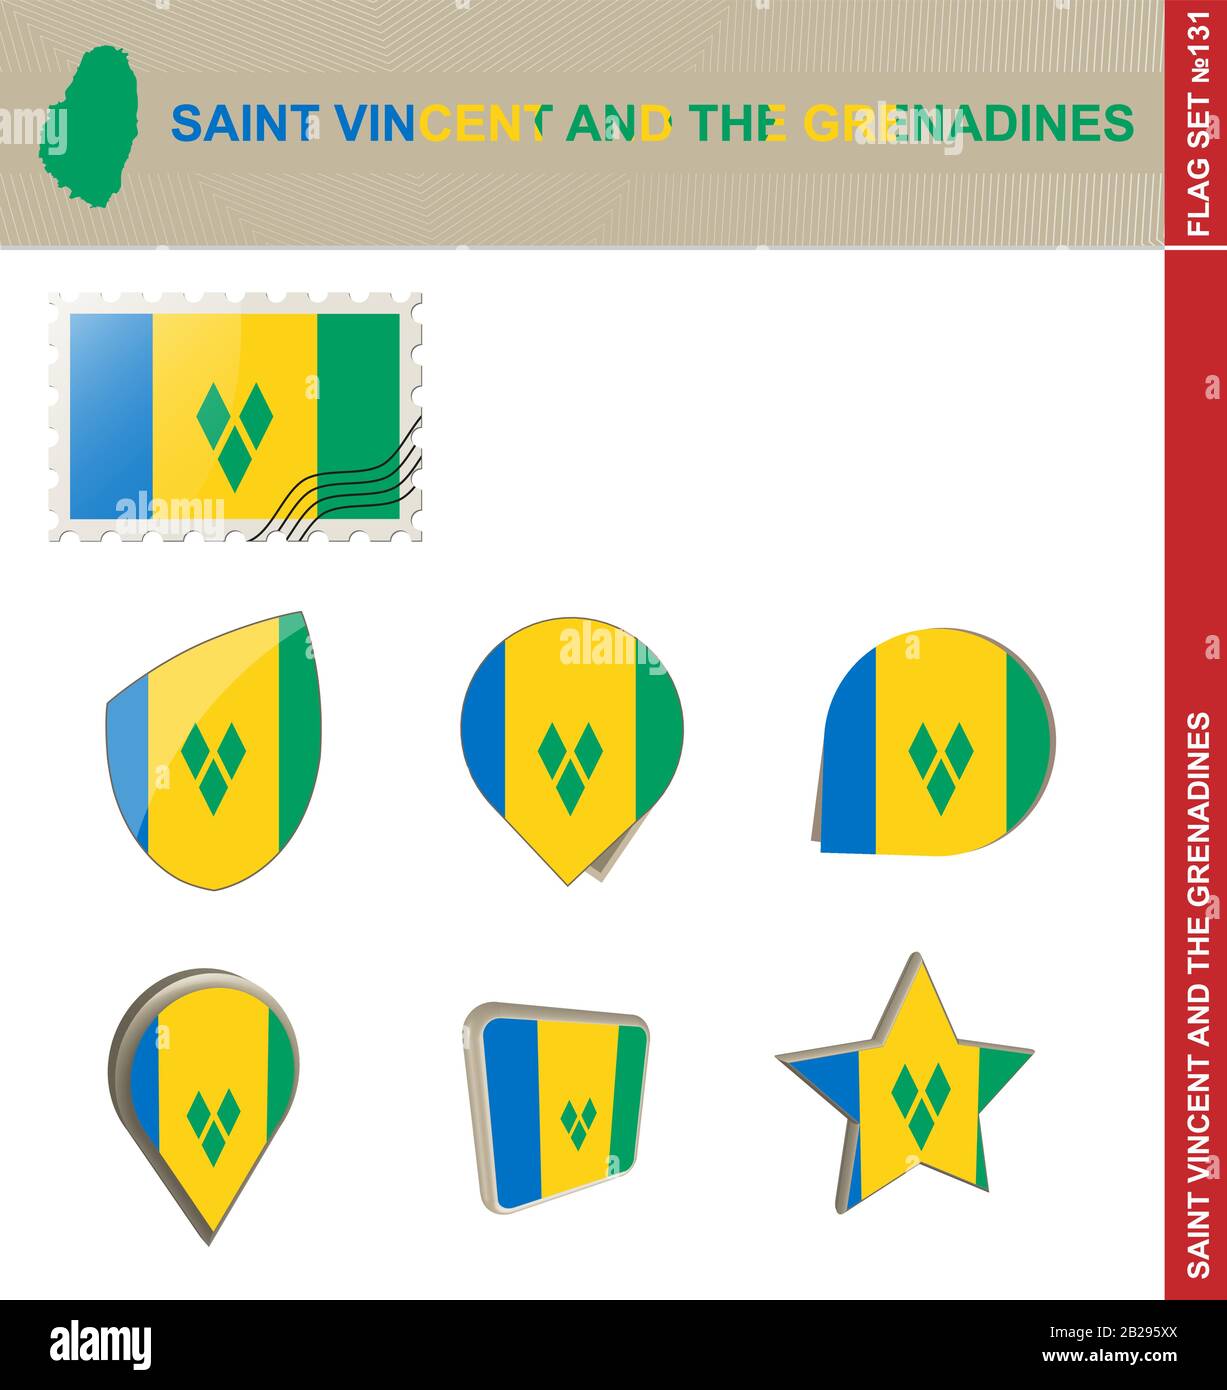 Ensemble De Drapeaux Saint-Vincent-Et-Les Grenadines, Ensemble De Drapeaux #131. Vecteur. Illustration de Vecteur